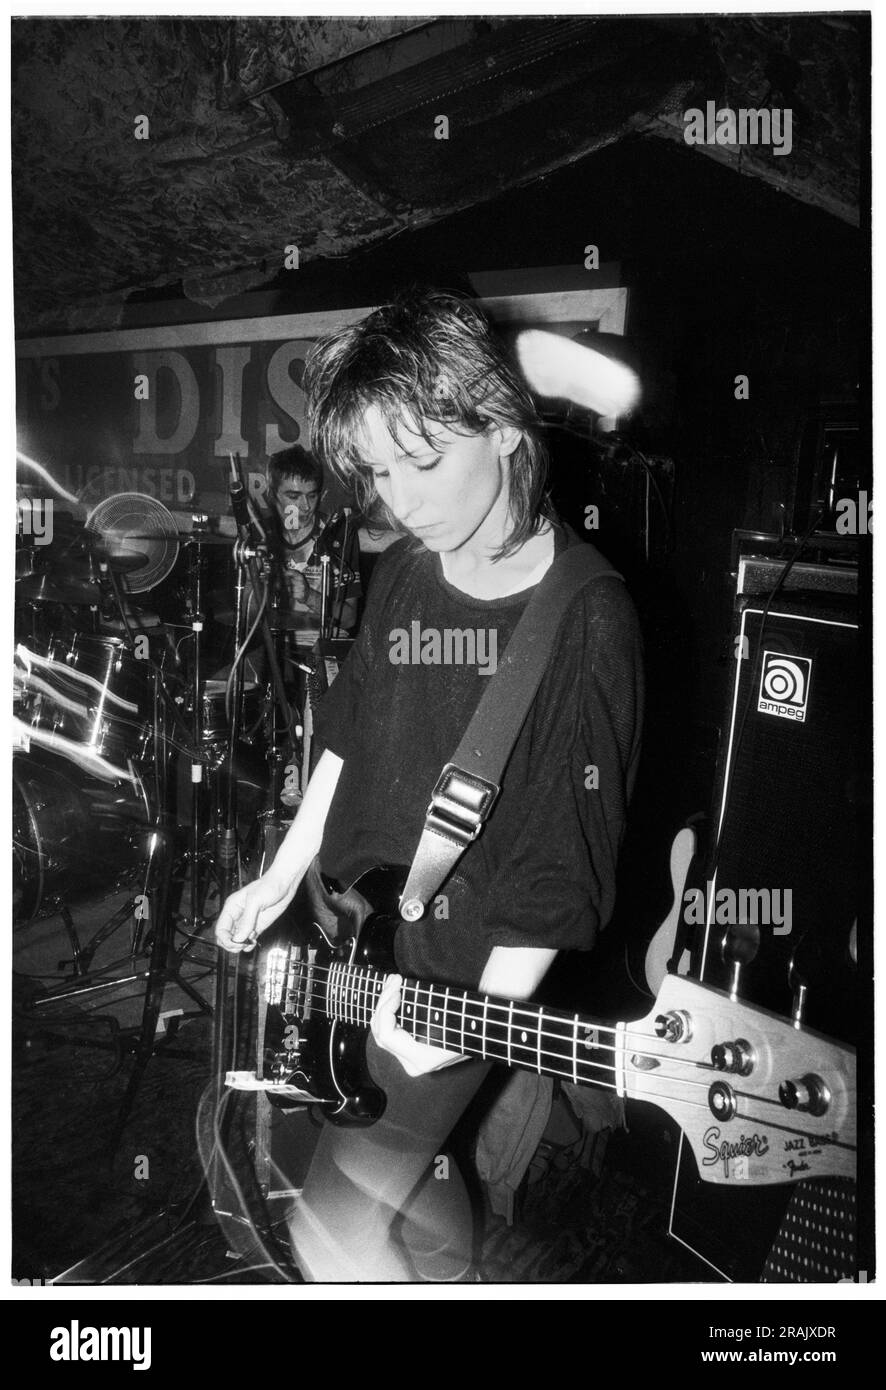 ELASTICA, GIOVANE, EARLY GIG, 1994: Annie Holland bassista degli elastica che suonava un concerto caotico molto precoce ai leggendari TJs di Newport, Galles, Regno Unito, il 23 febbraio 1994. Foto: Rob Watkins. INFO: Elastica, un gruppo alternative rock britannico formatosi nel 1992, ha guadagnato consensi con il loro omonimo album di debutto. Successi come "Connection" hanno mostrato le loro influenze post-punk e New Wave. Guidato da Justine Frischmann, il contributo di elastica all'era Britpop fu significativo. Foto Stock